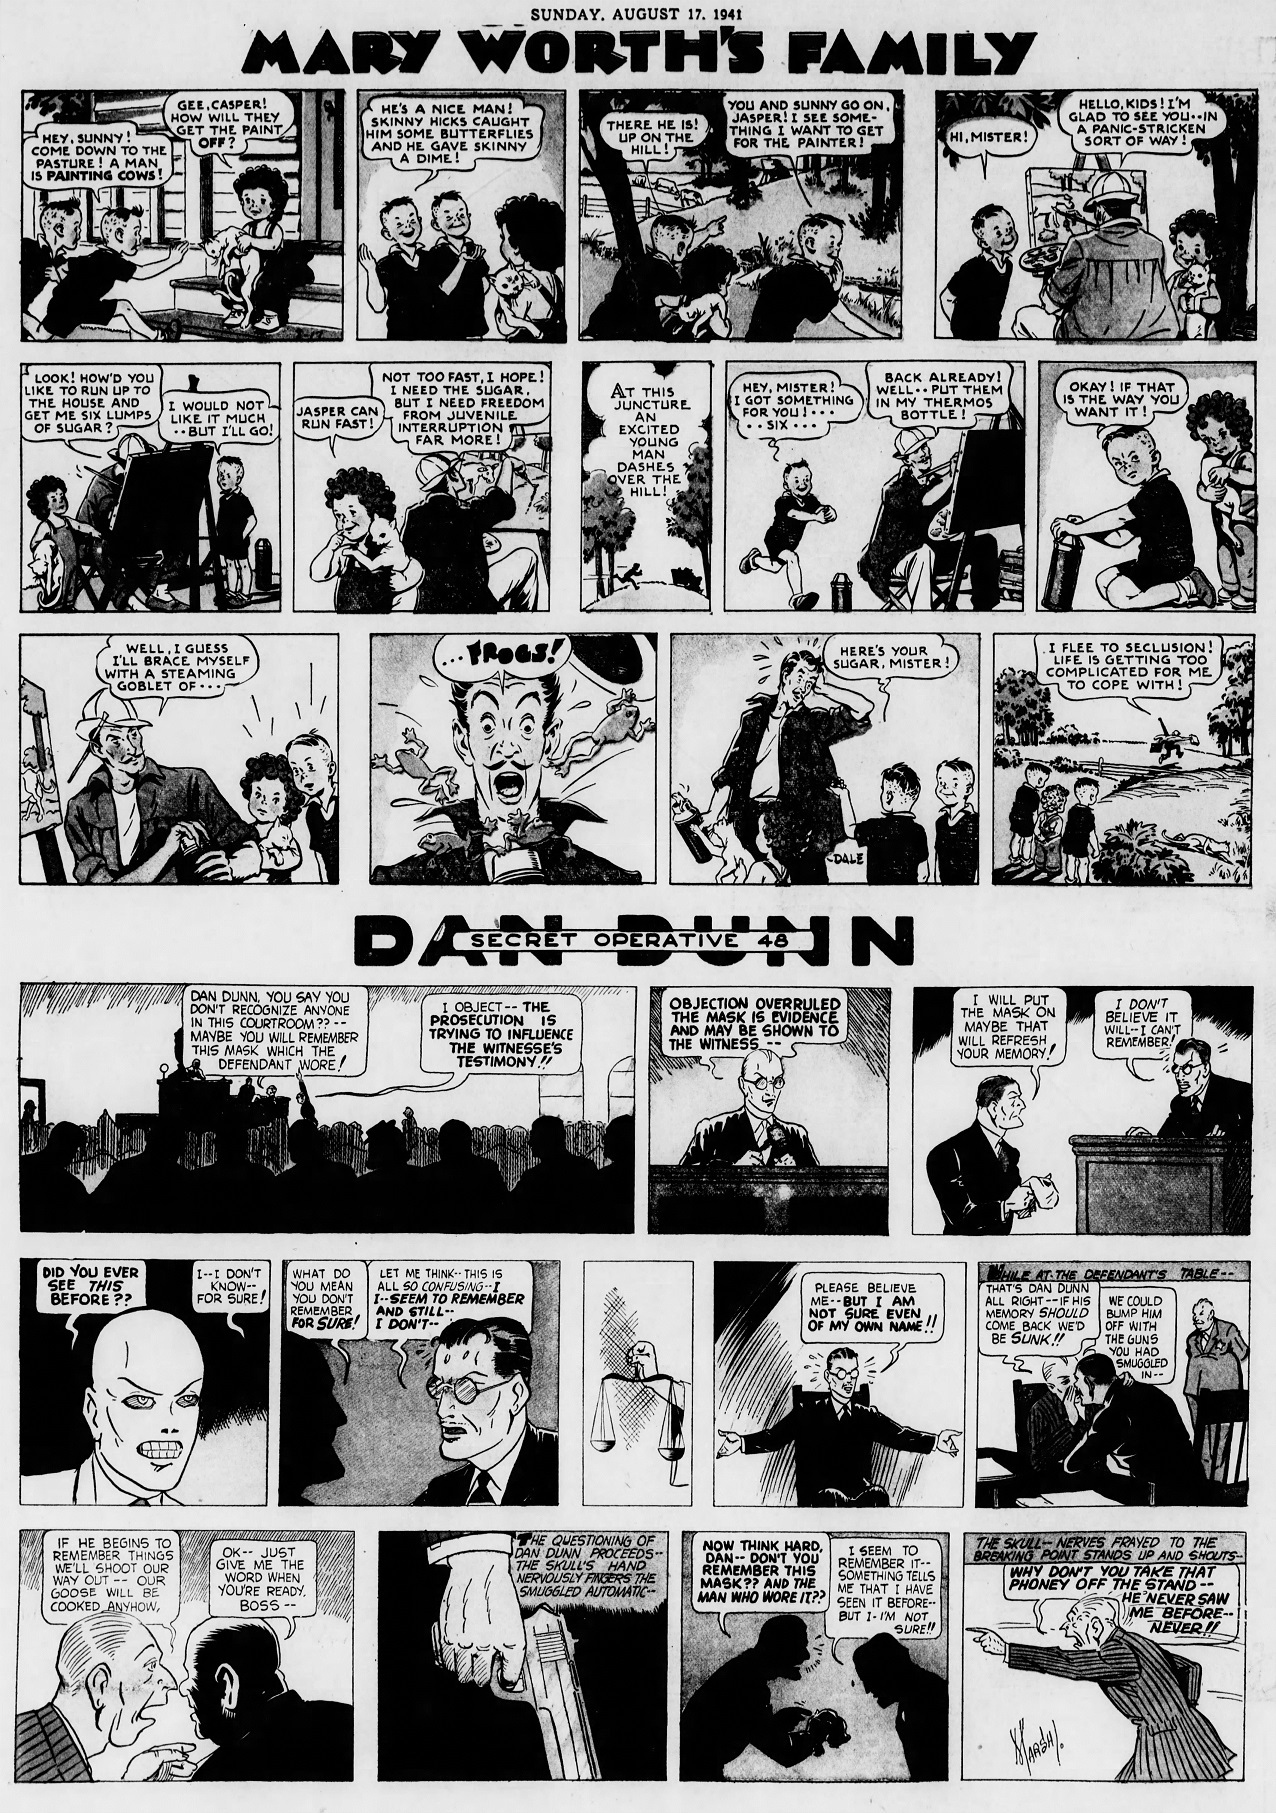 The_Brooklyn_Daily_Eagle_Sun__Aug_17__1941_(7).jpg